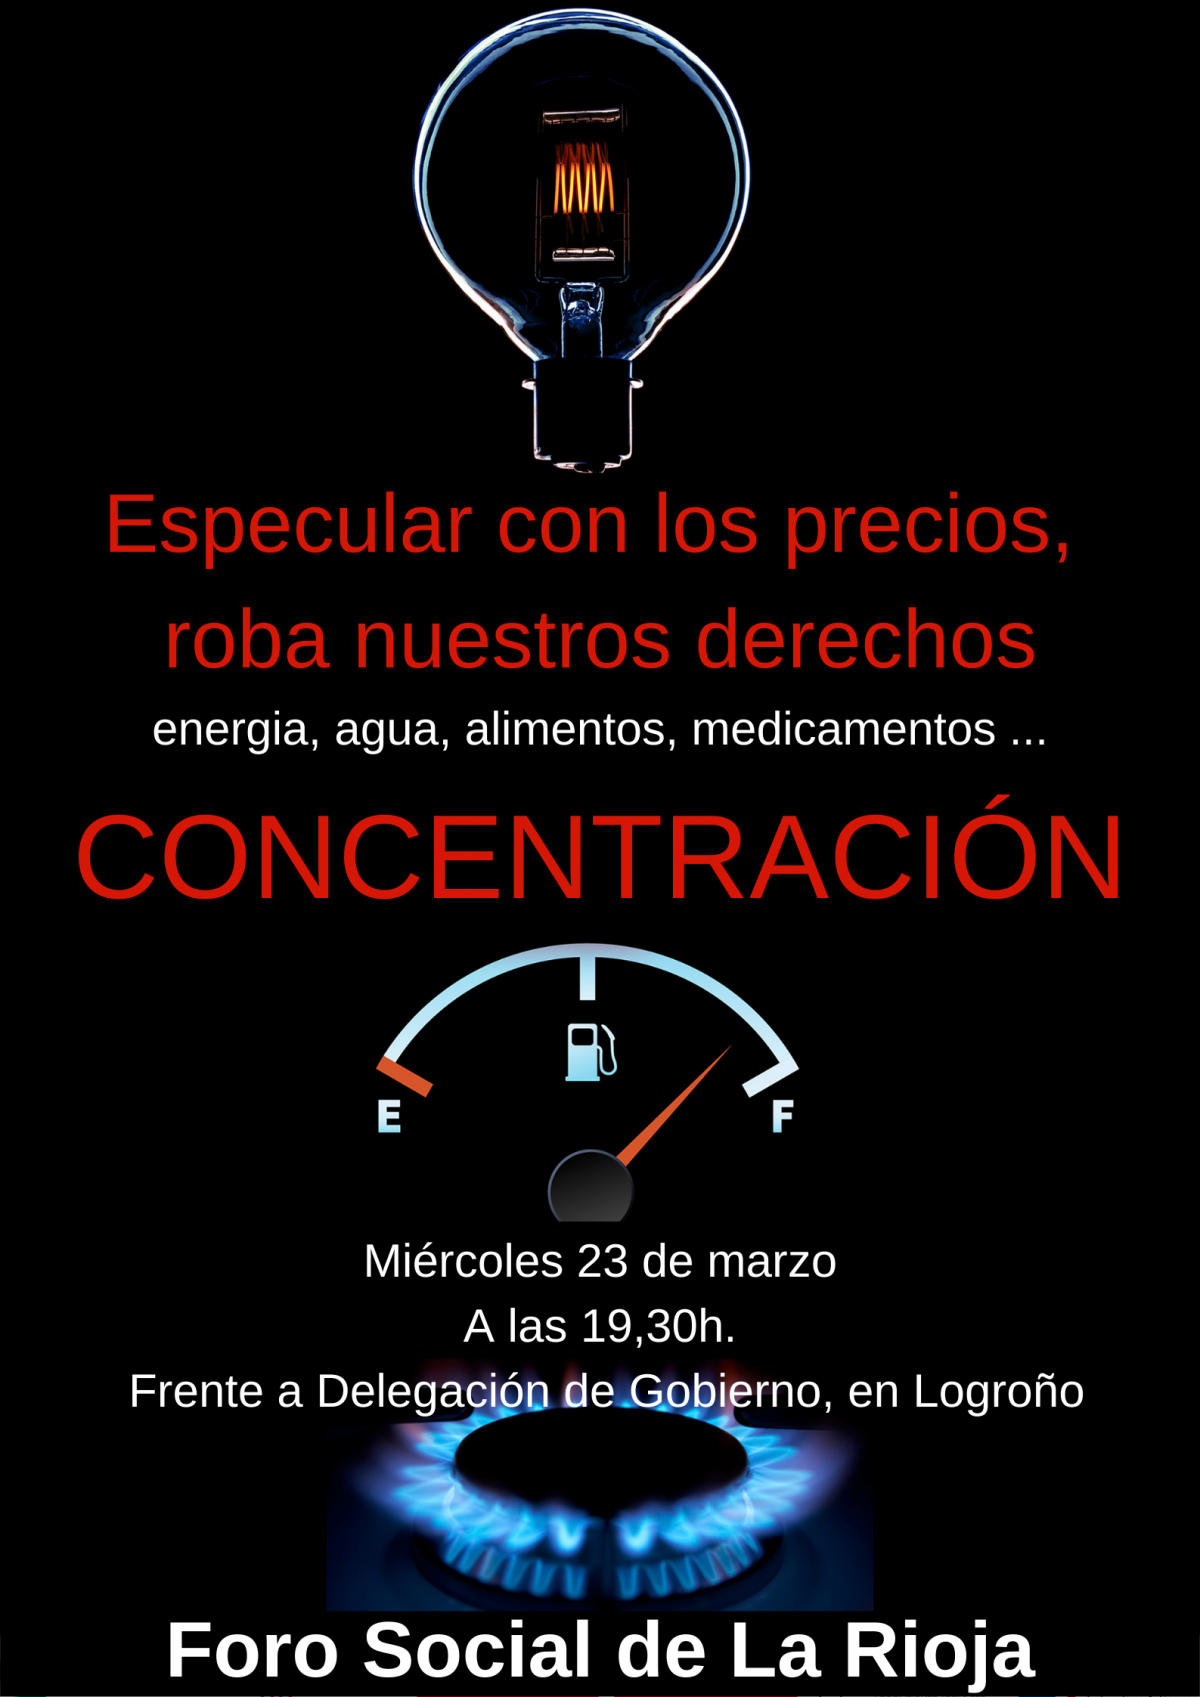 Concentracin mircoles 23 a las 19:30 frente a Delegacin de gobierno, en Logroo. Con el Foro Social de La Rioja